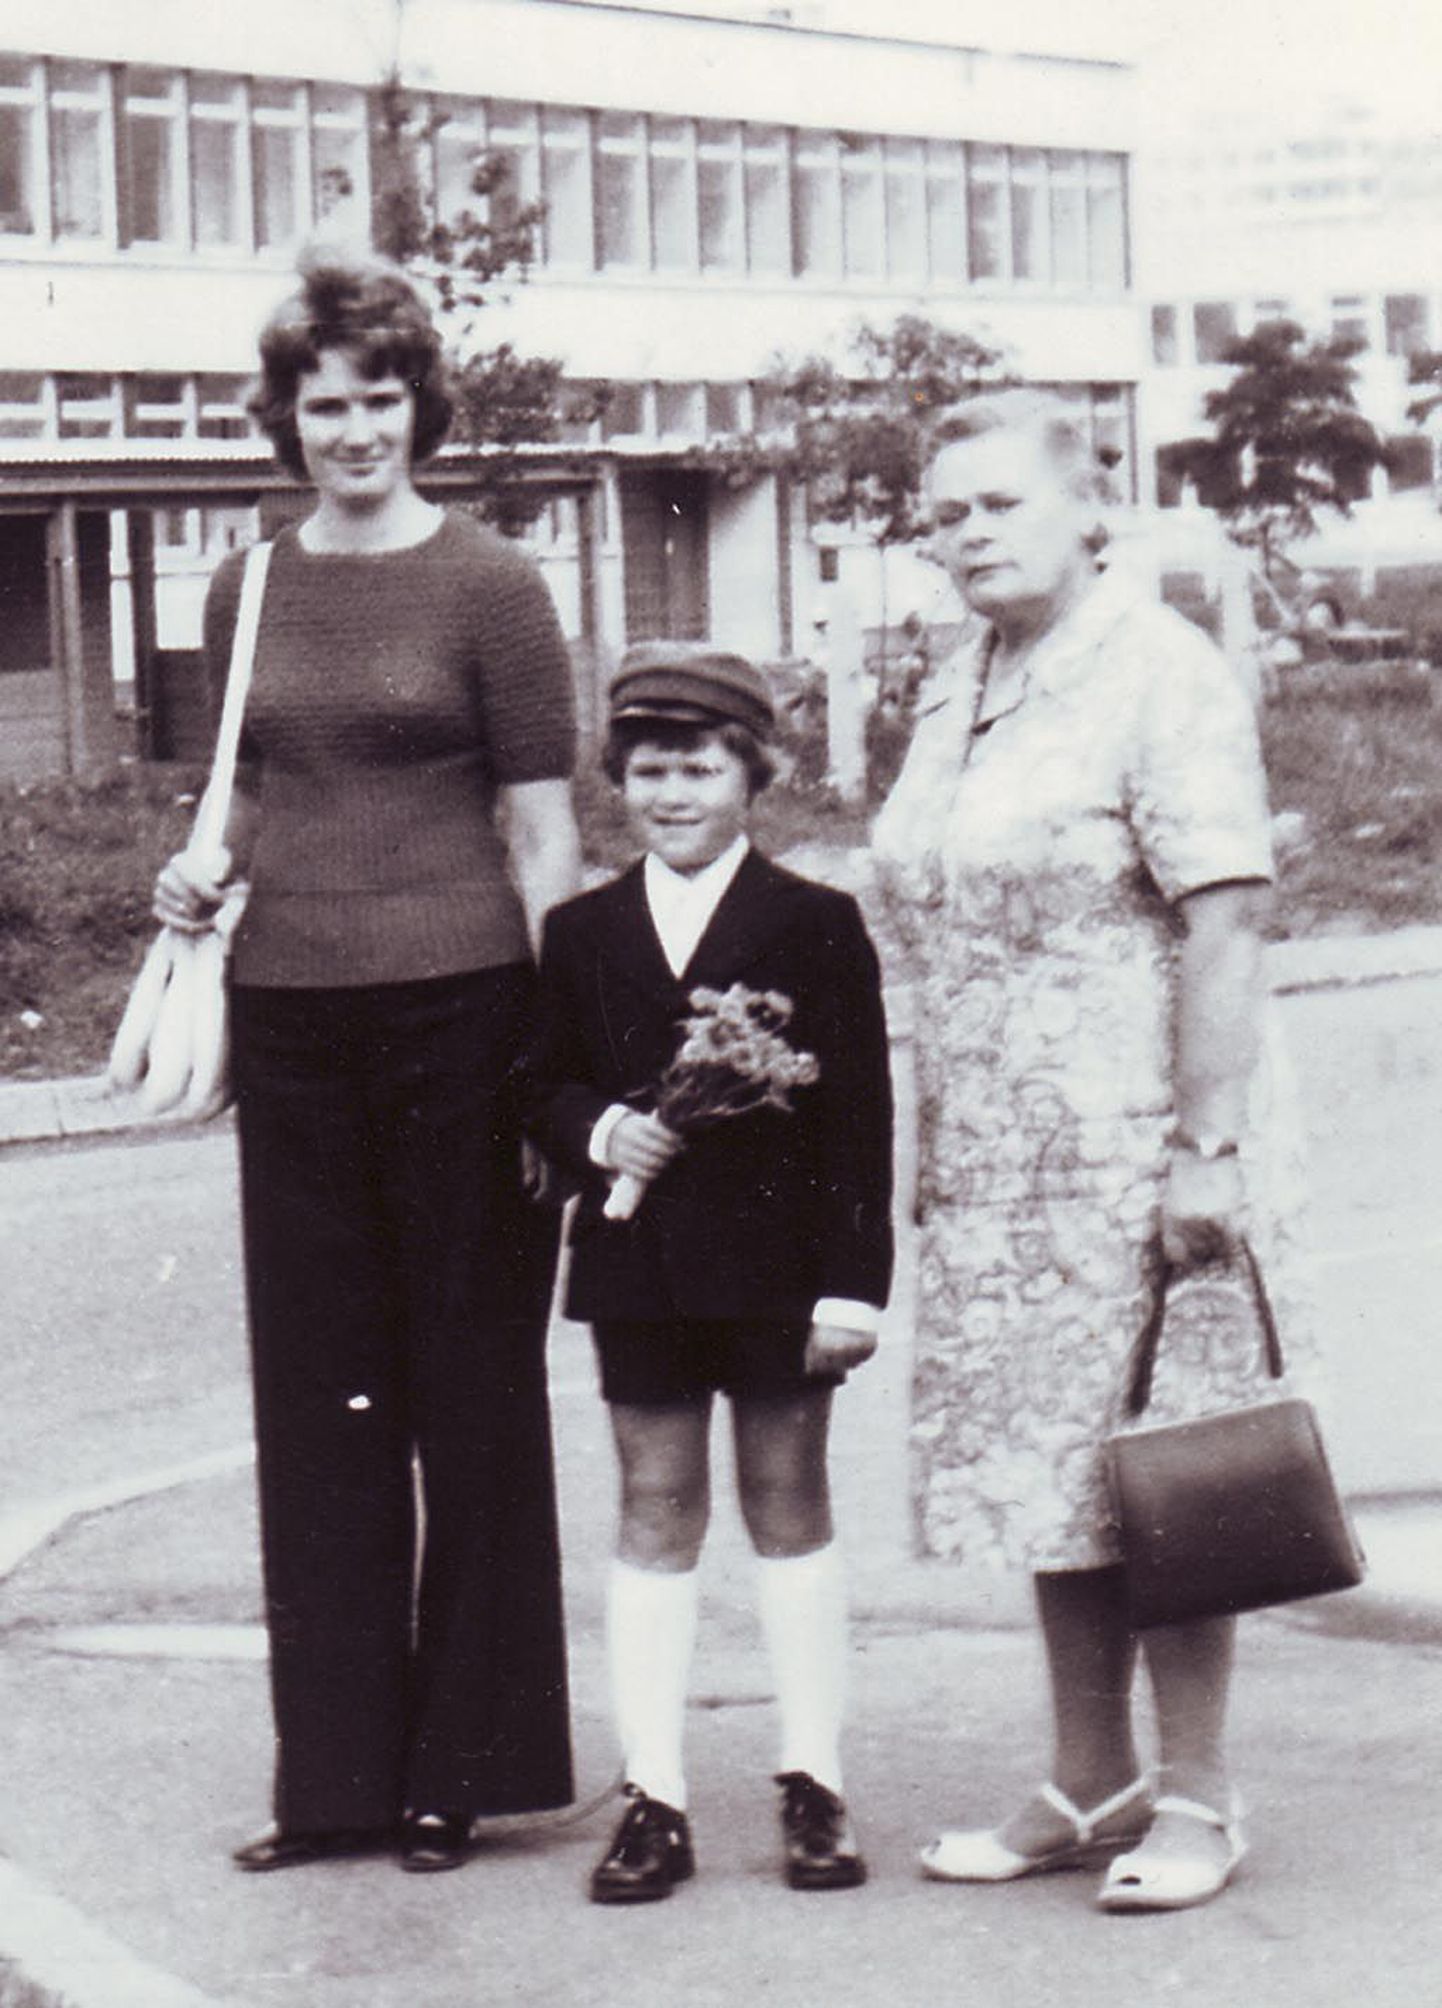 Esimese koolipäeva jäädvustus: Romek Kosenkranius ema Ina ja vanaema Edithiga.